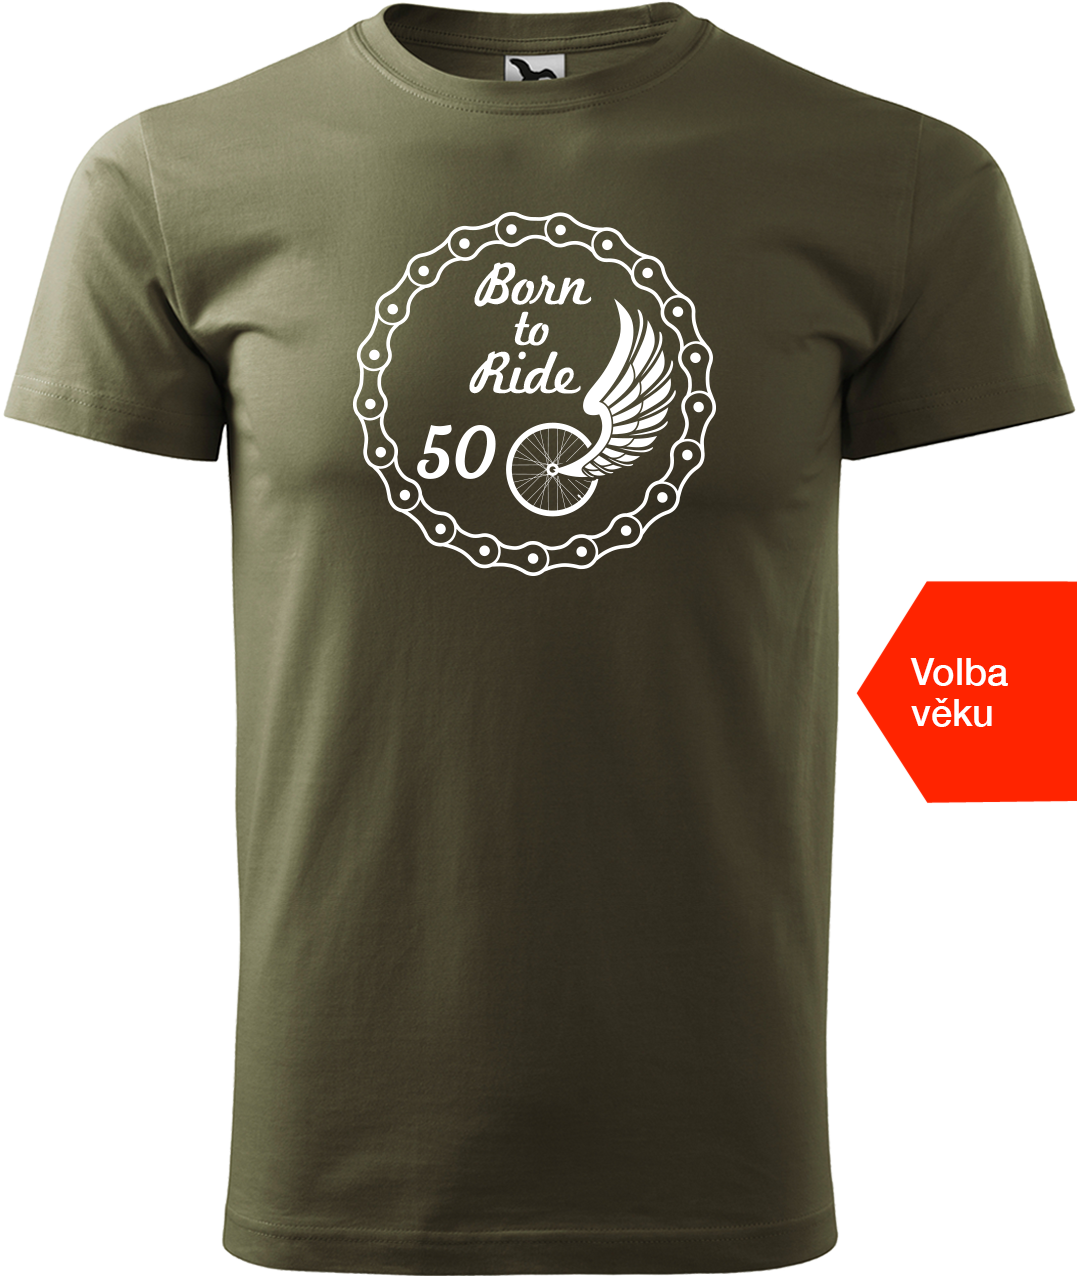 Pánské tričko pro cyklistu s věkem - Born to Ride (wings) Velikost: S, Barva: Military (69)